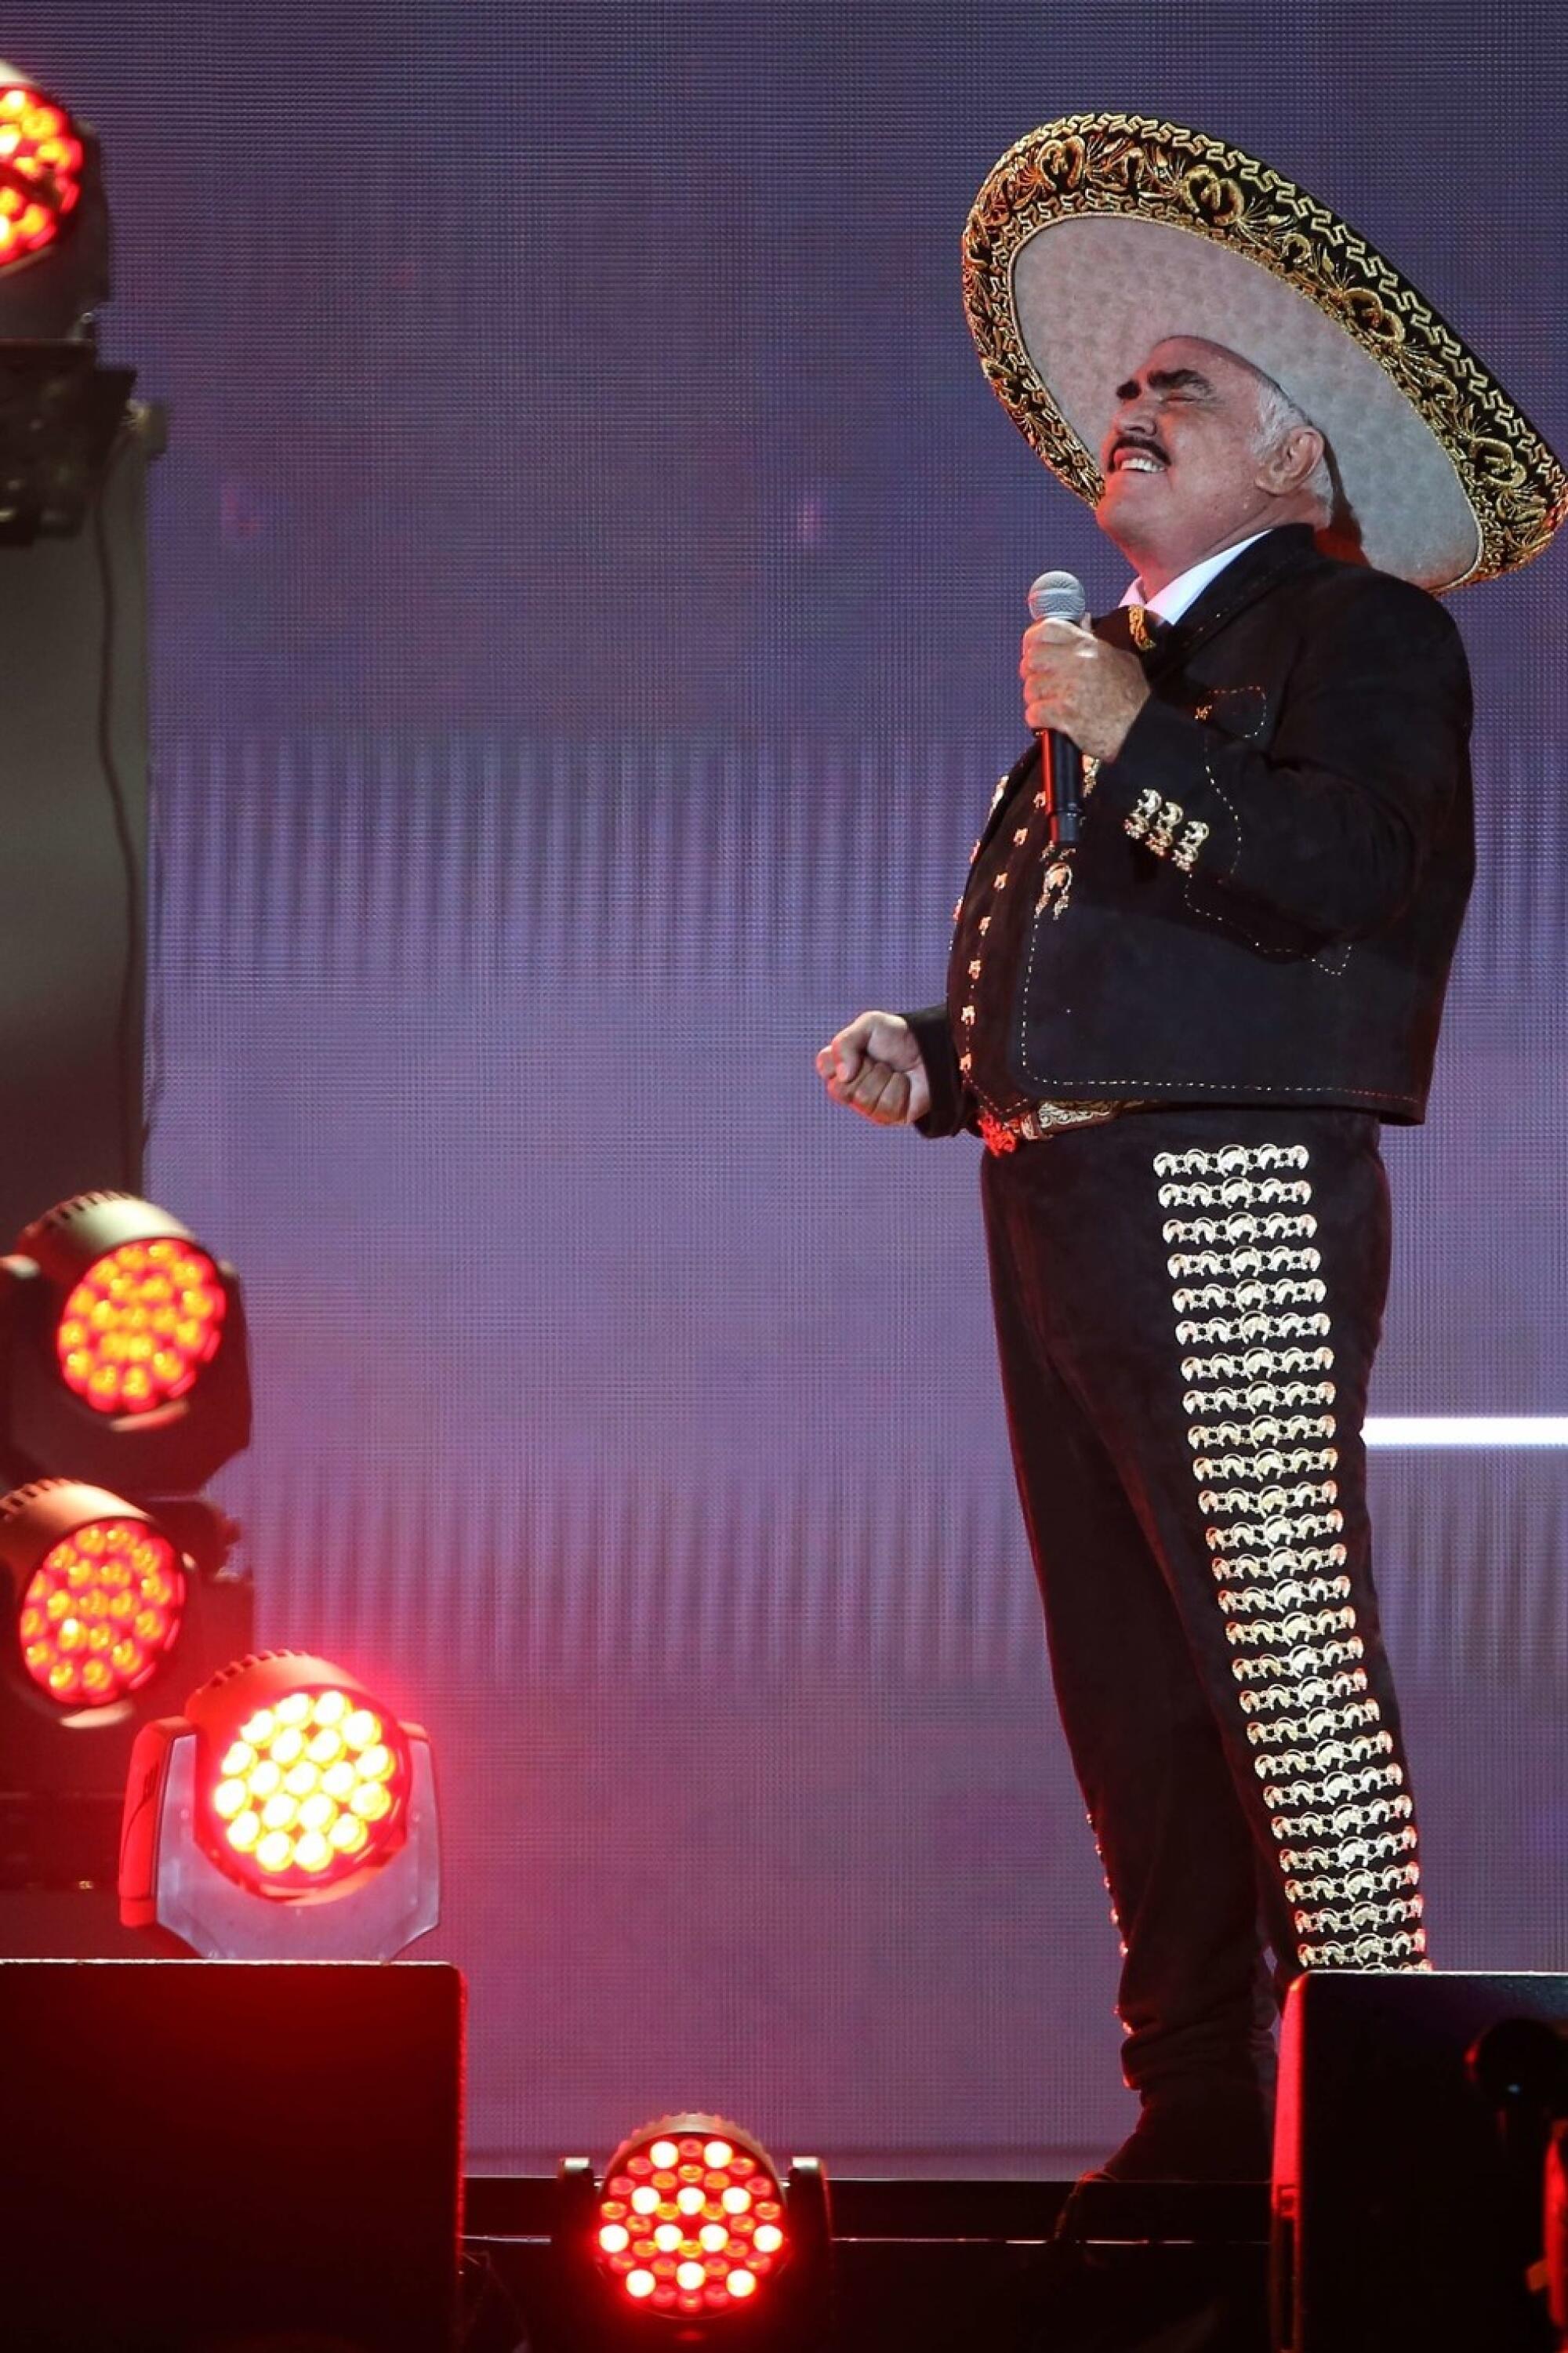 La música de Vicente Fernández sigue sonando insistentemente en las plataformas digitales tras su partida.